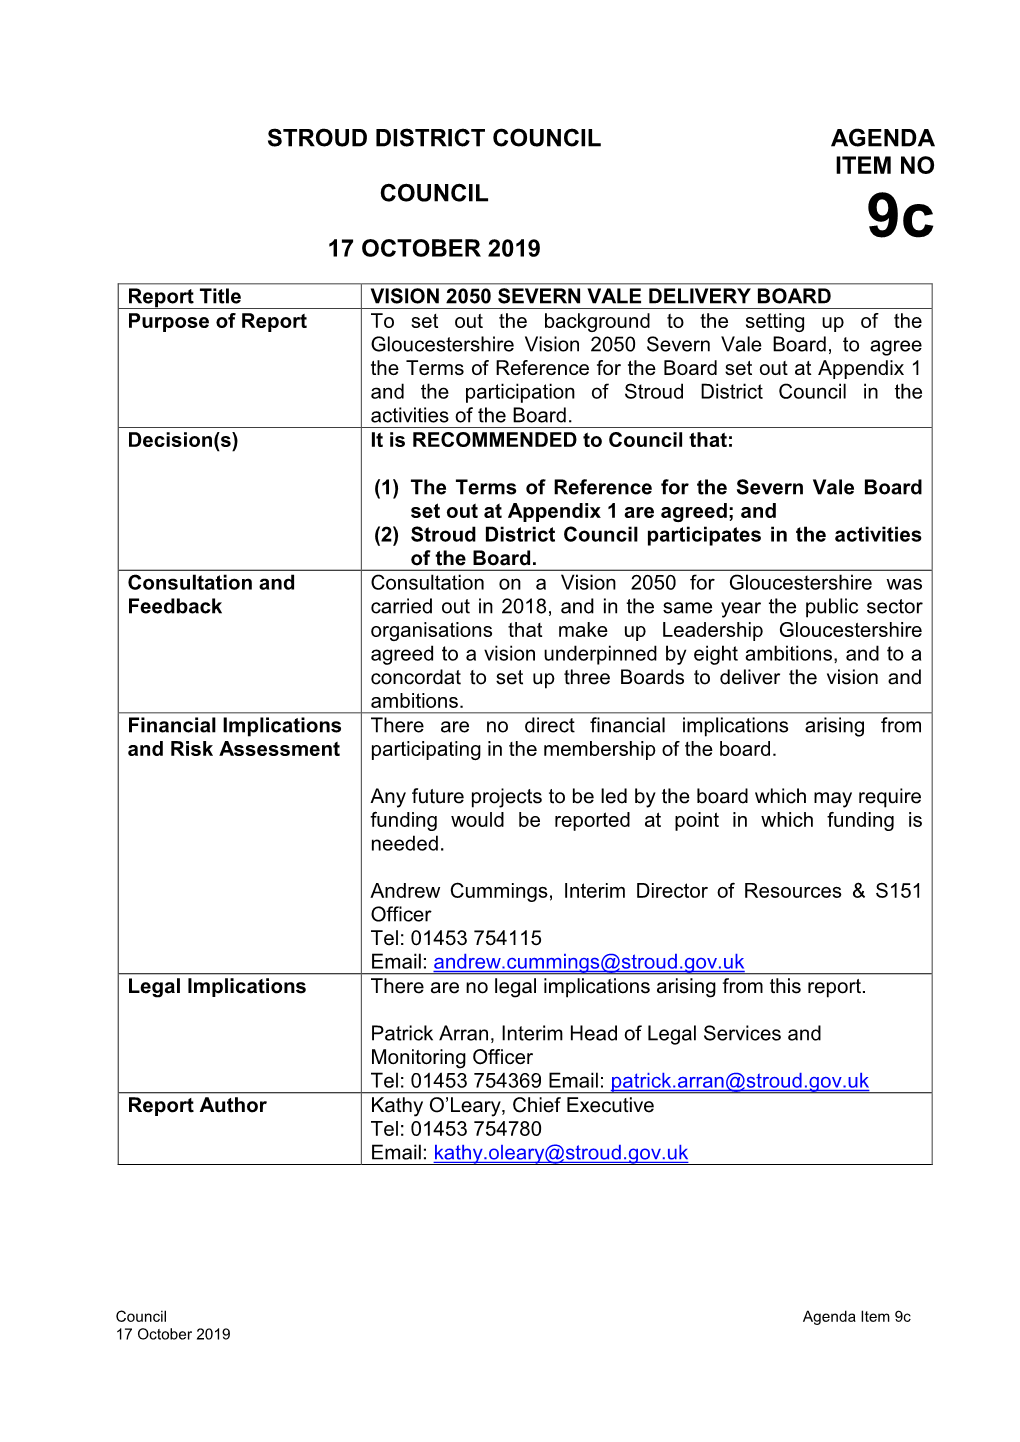 Stroud District Council Council 17 October 2019